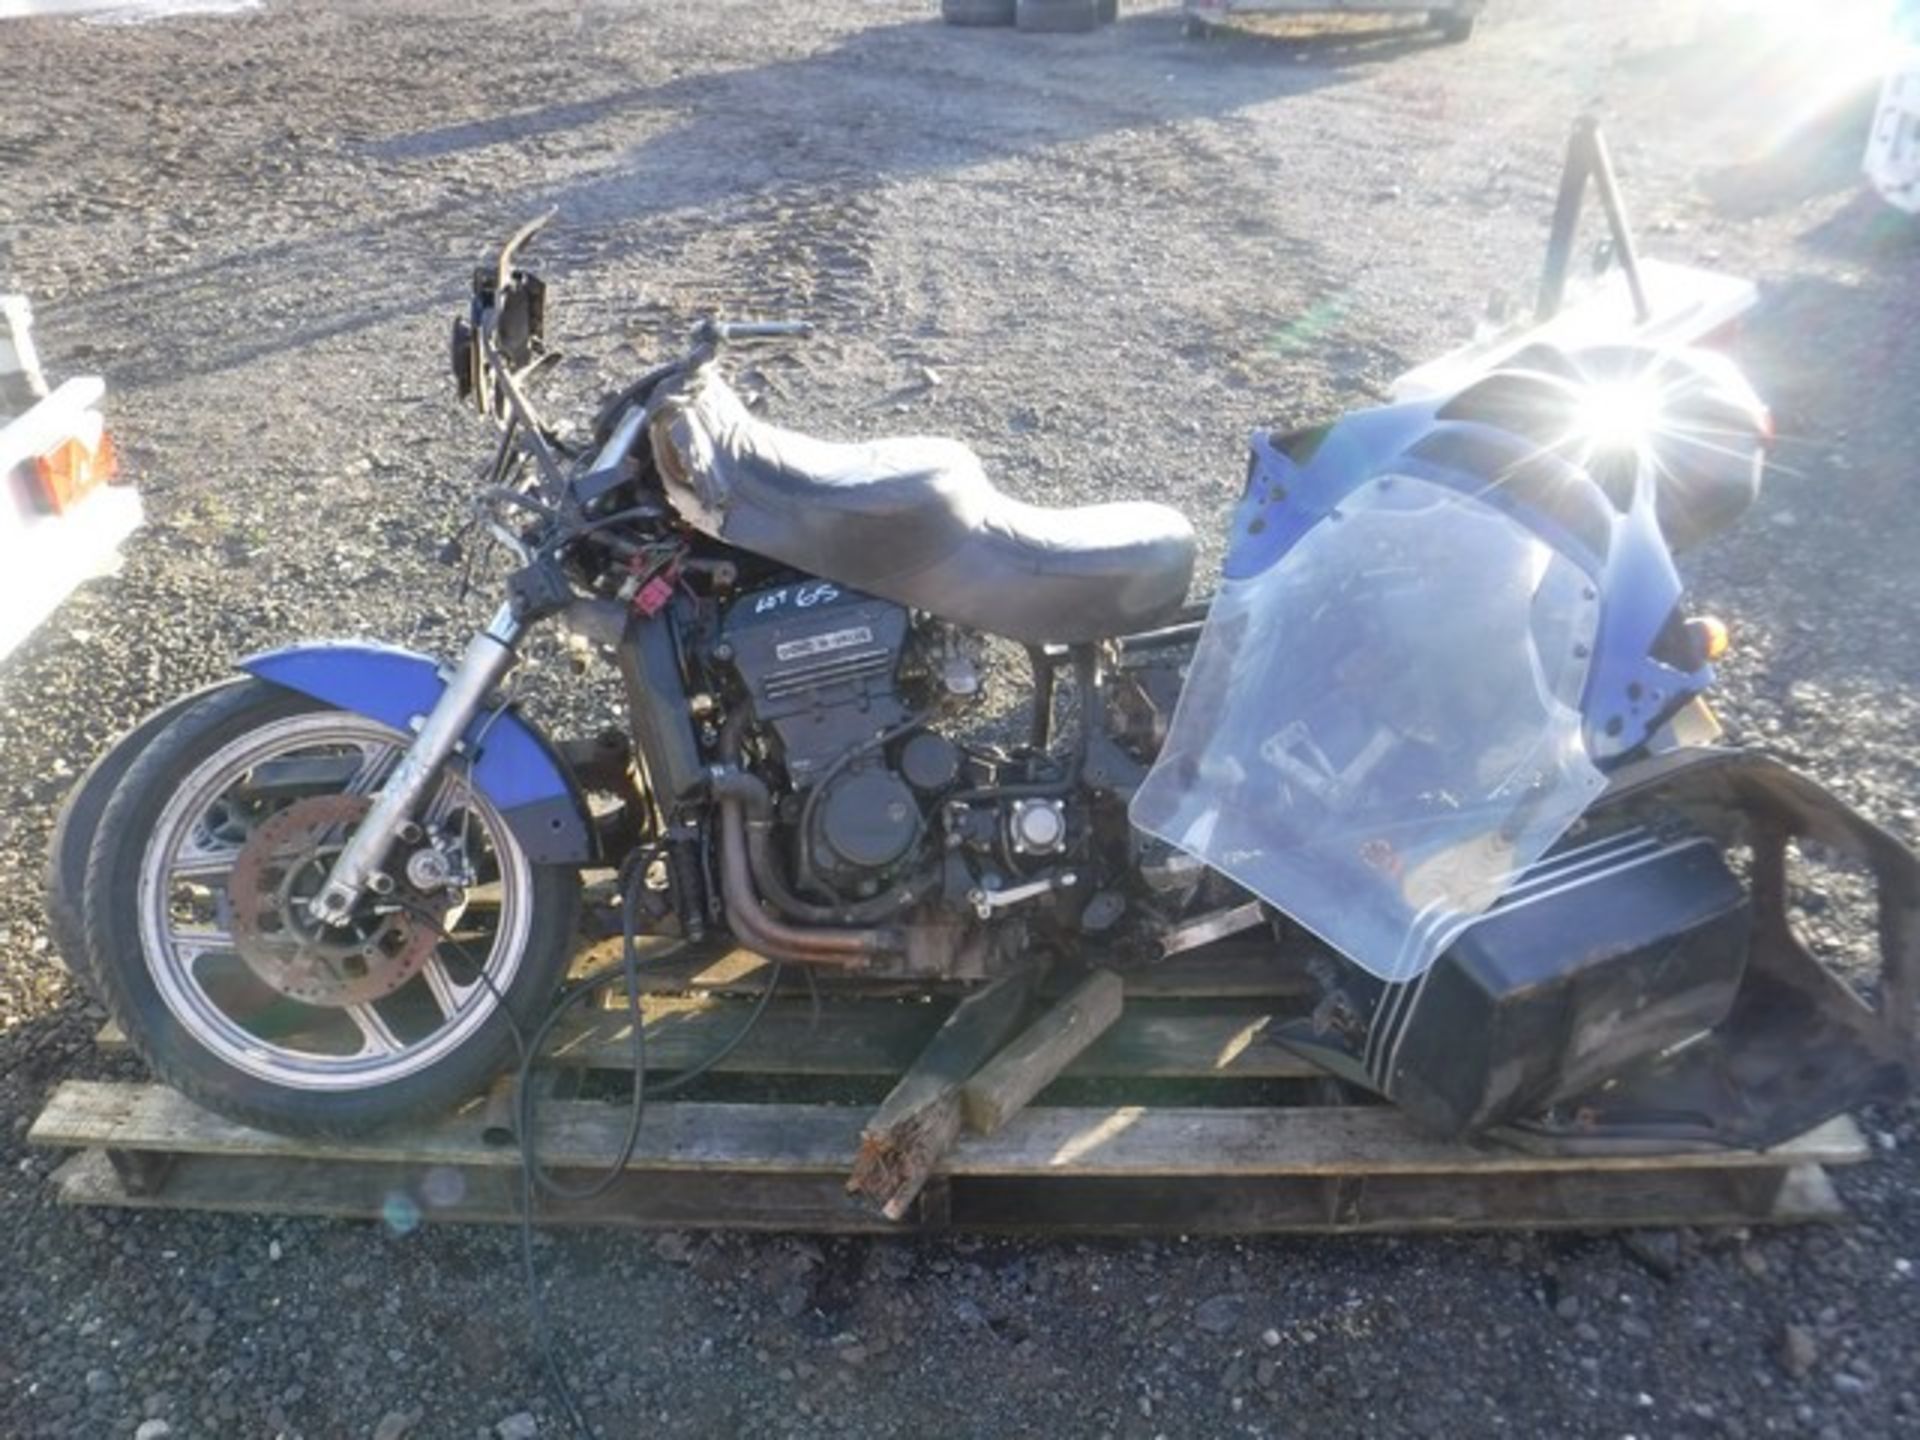 KAWAZAKI 2100 motor bike. Spares or repair. Reg No G128 8NP